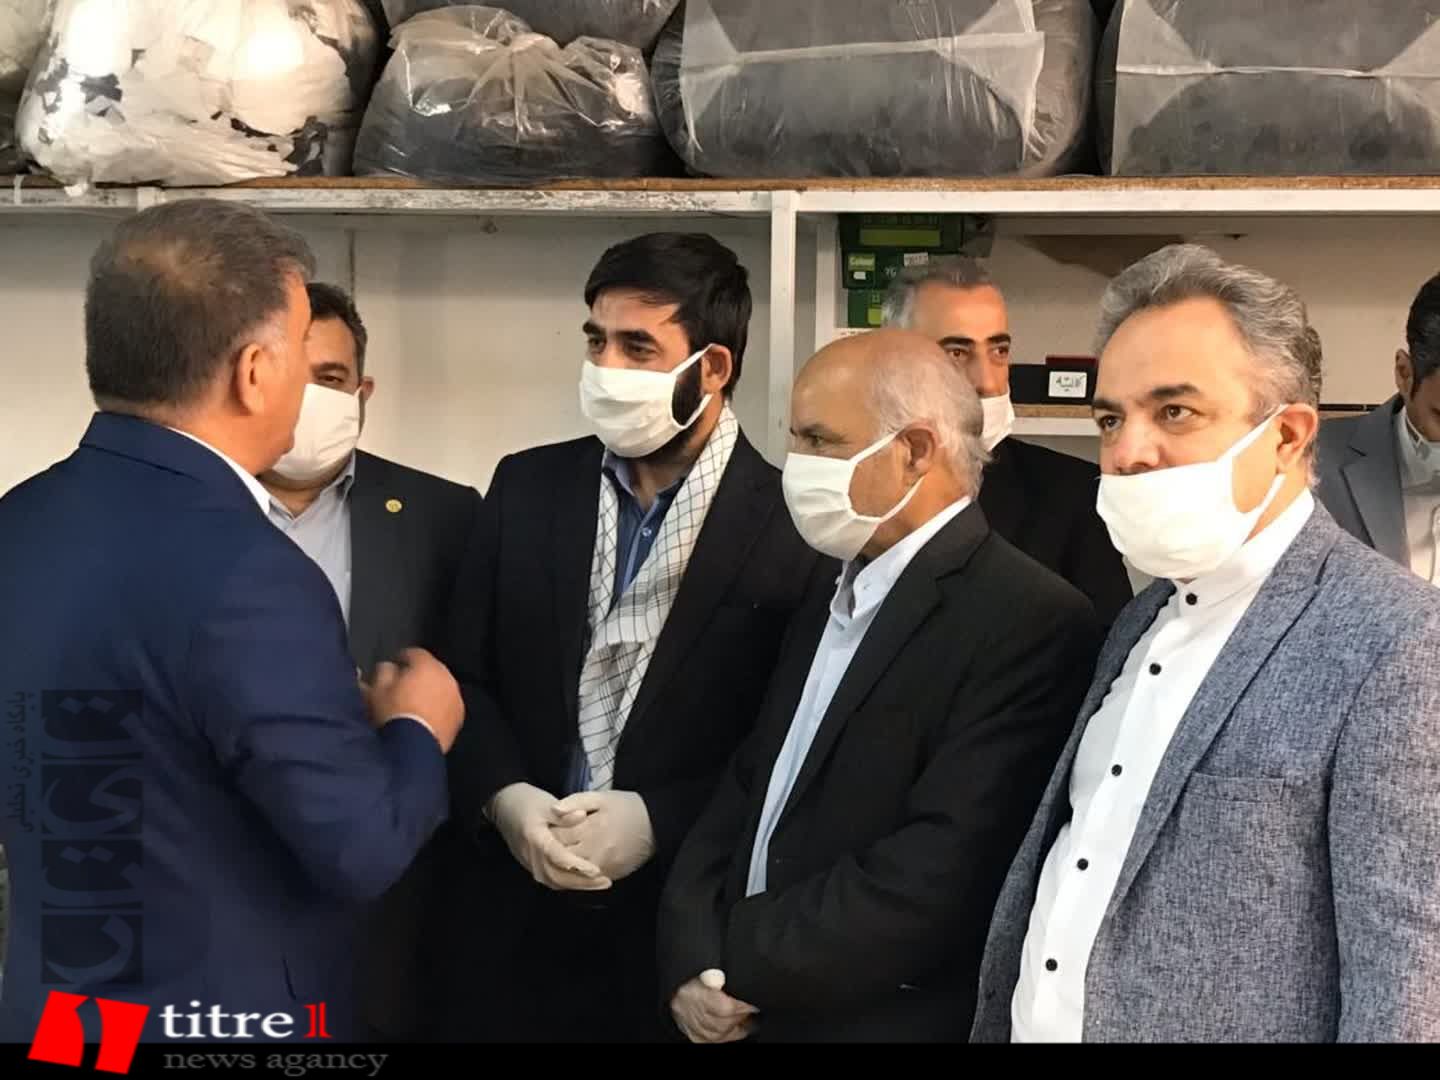 برش روزانه 200 هزار ماسک در کارخانه عصر جدیدِ کرج/ 150 مجاهد سلامت البرز کانون تولید ماسک و گان در کشور شدند + تصاویر